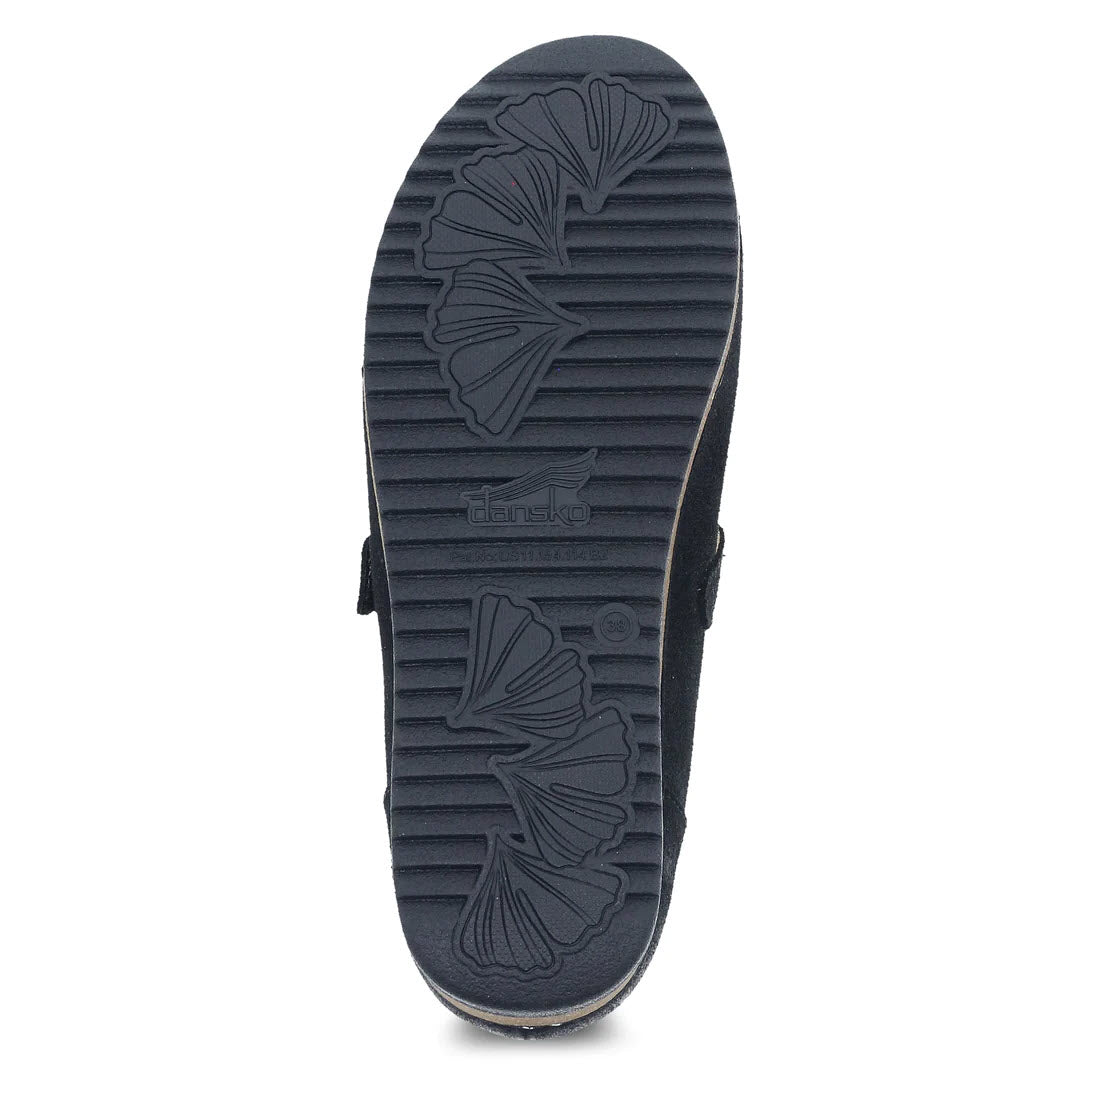 SOF SOLE BLACK COLOR SHINE SPONGE - Lamey Wellehan Shoes